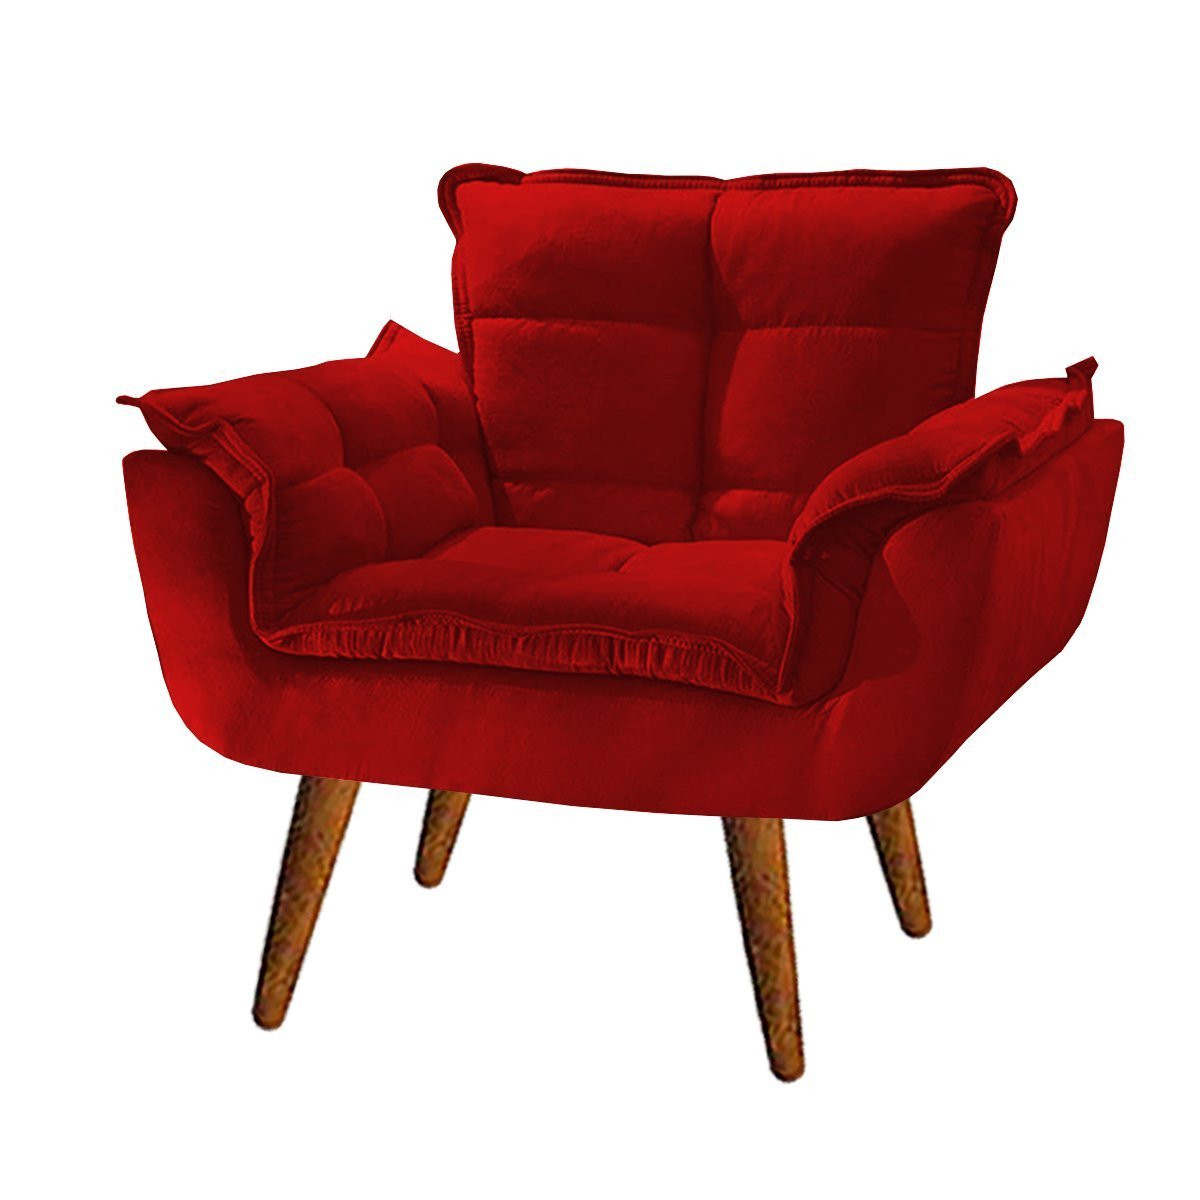 Poltrona decorativa opala confortável para sala quarto recepção suede luxo arapongas decor Vermelha - 2